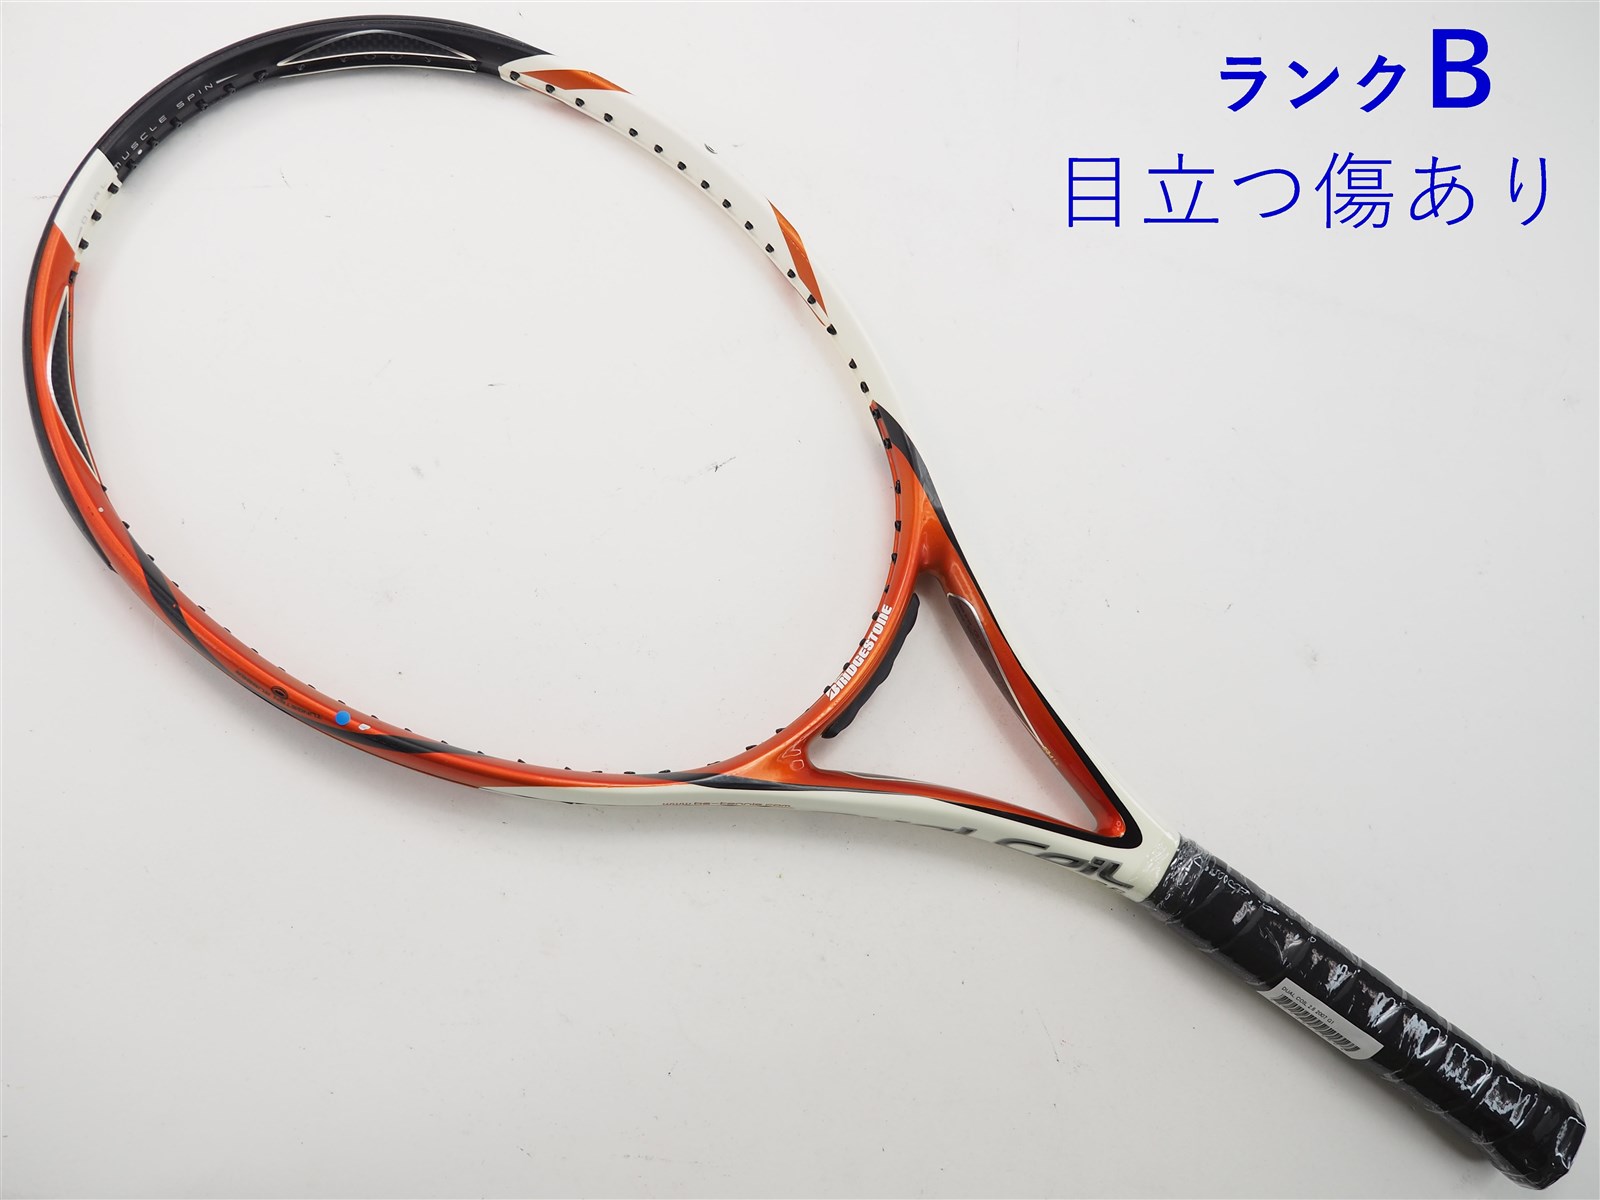 110平方インチ長さテニスラケット ブリヂストン デュアル コイル キティー 2.65 2010年モデル (G2)BRIDGESTONE DUAL COIL KITTY 2.65 2010